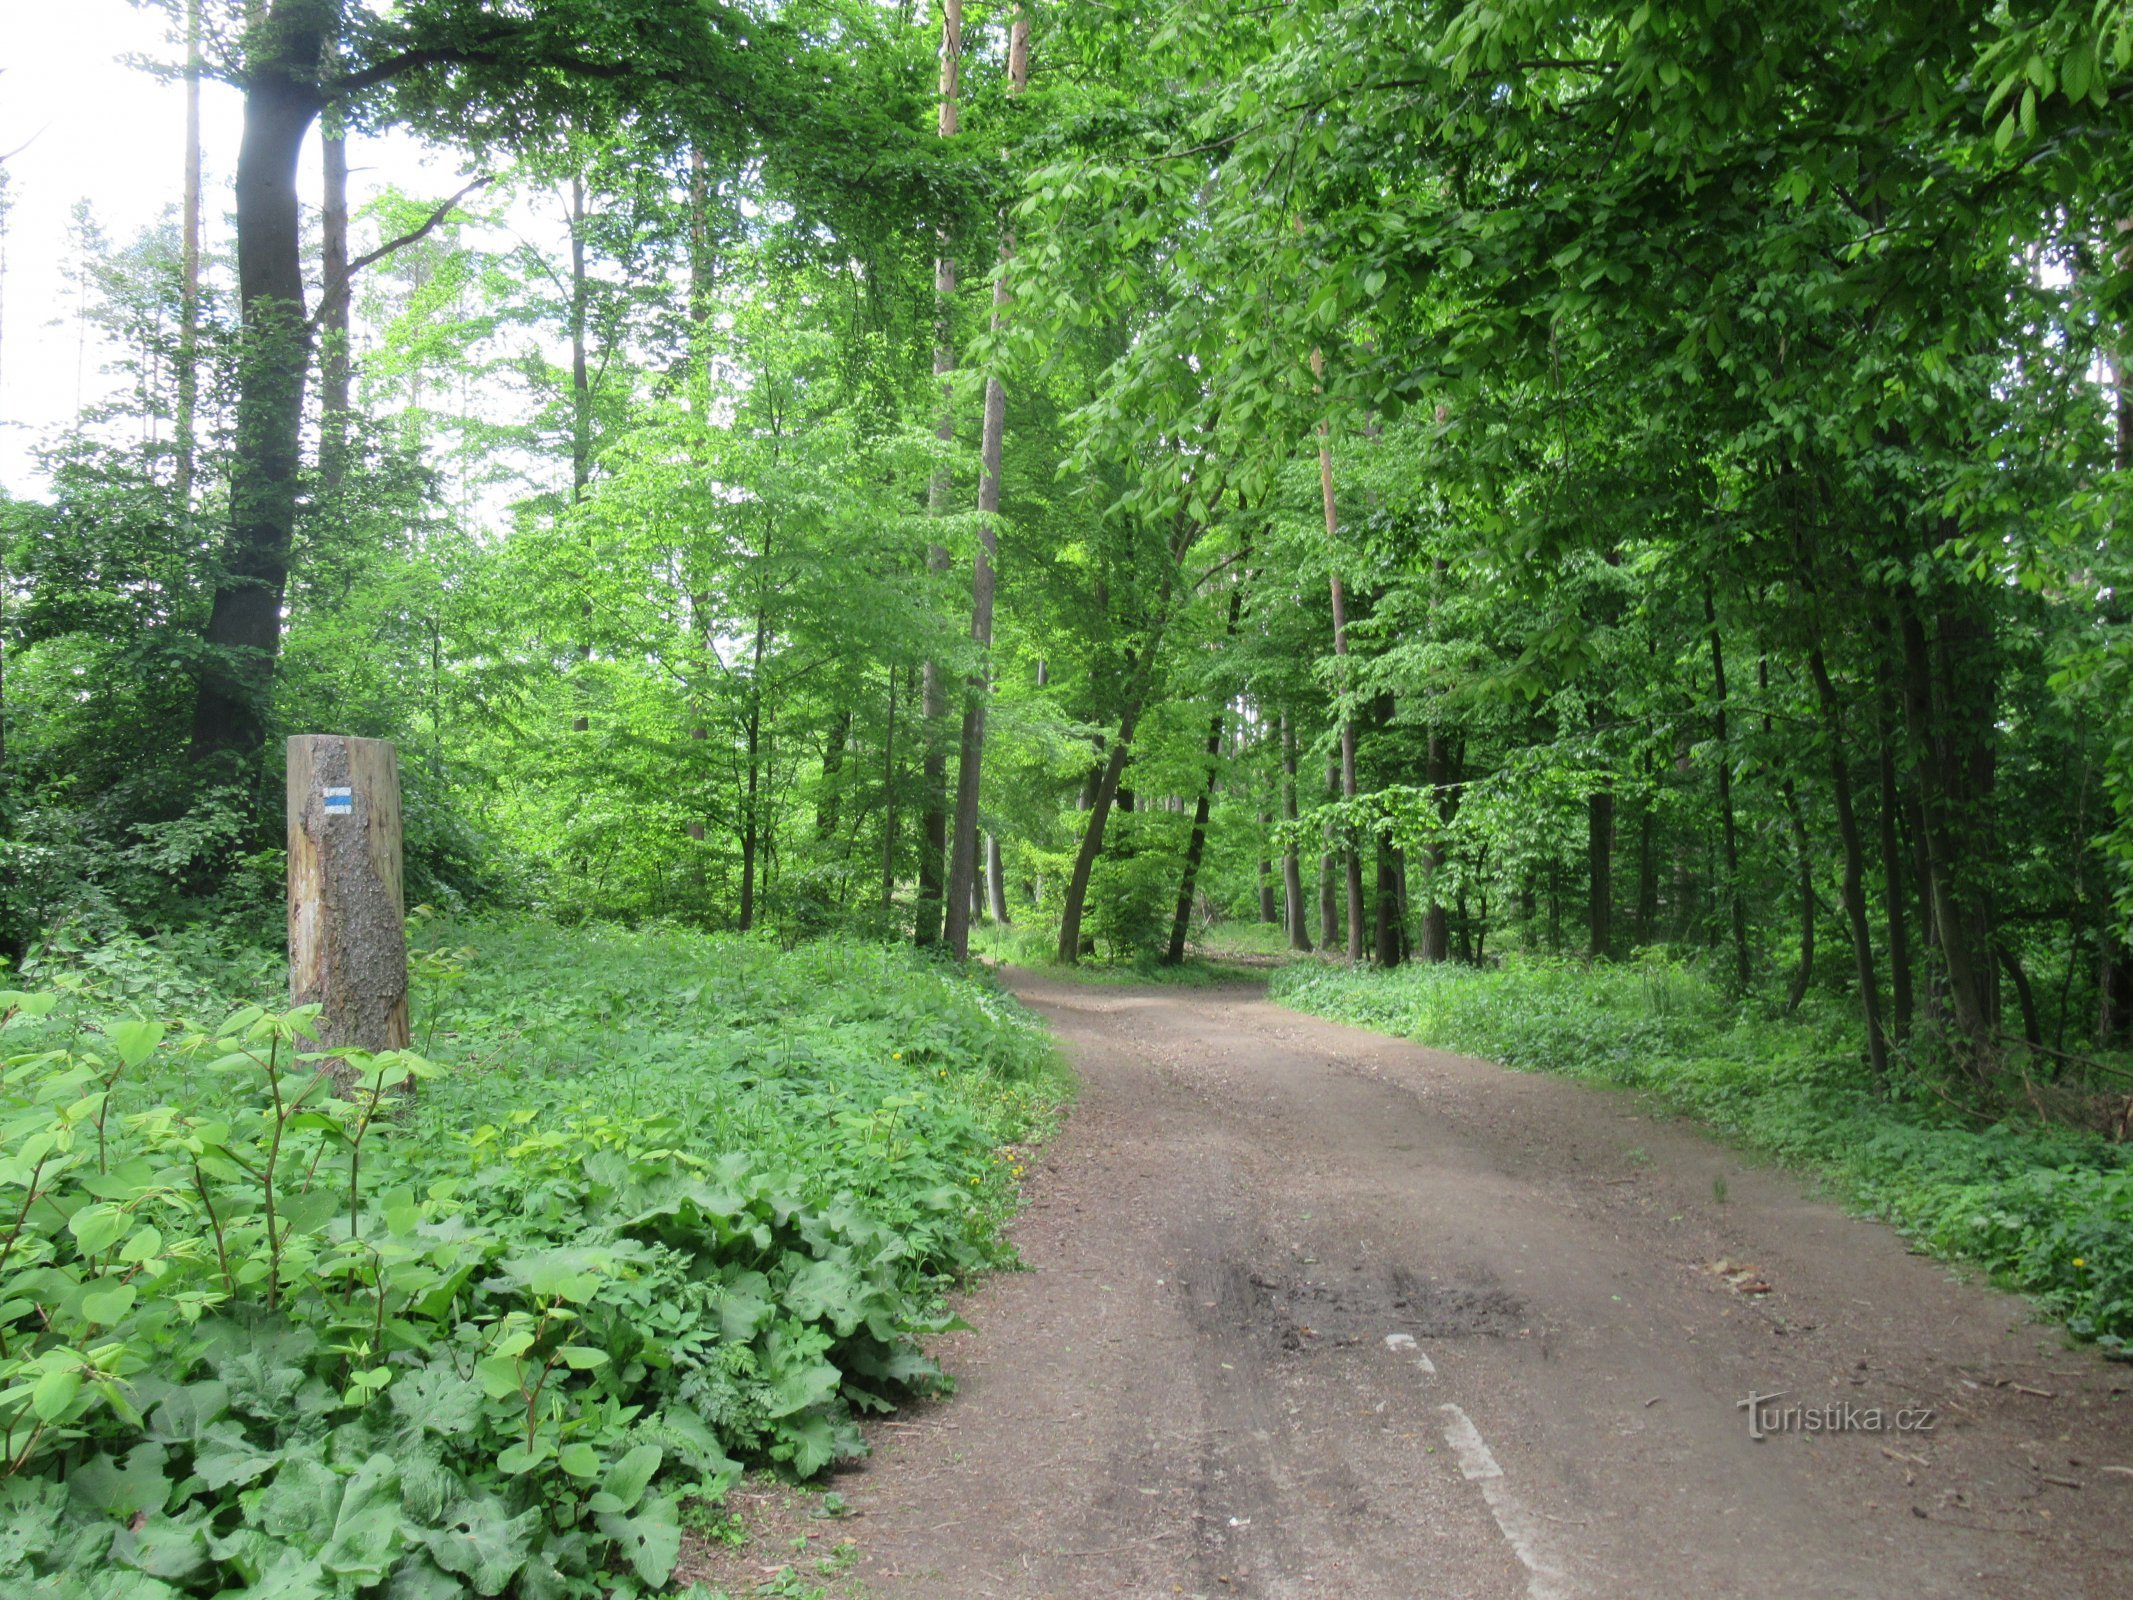 Az útvonal többnyire lombos erdőkön keresztül vezet